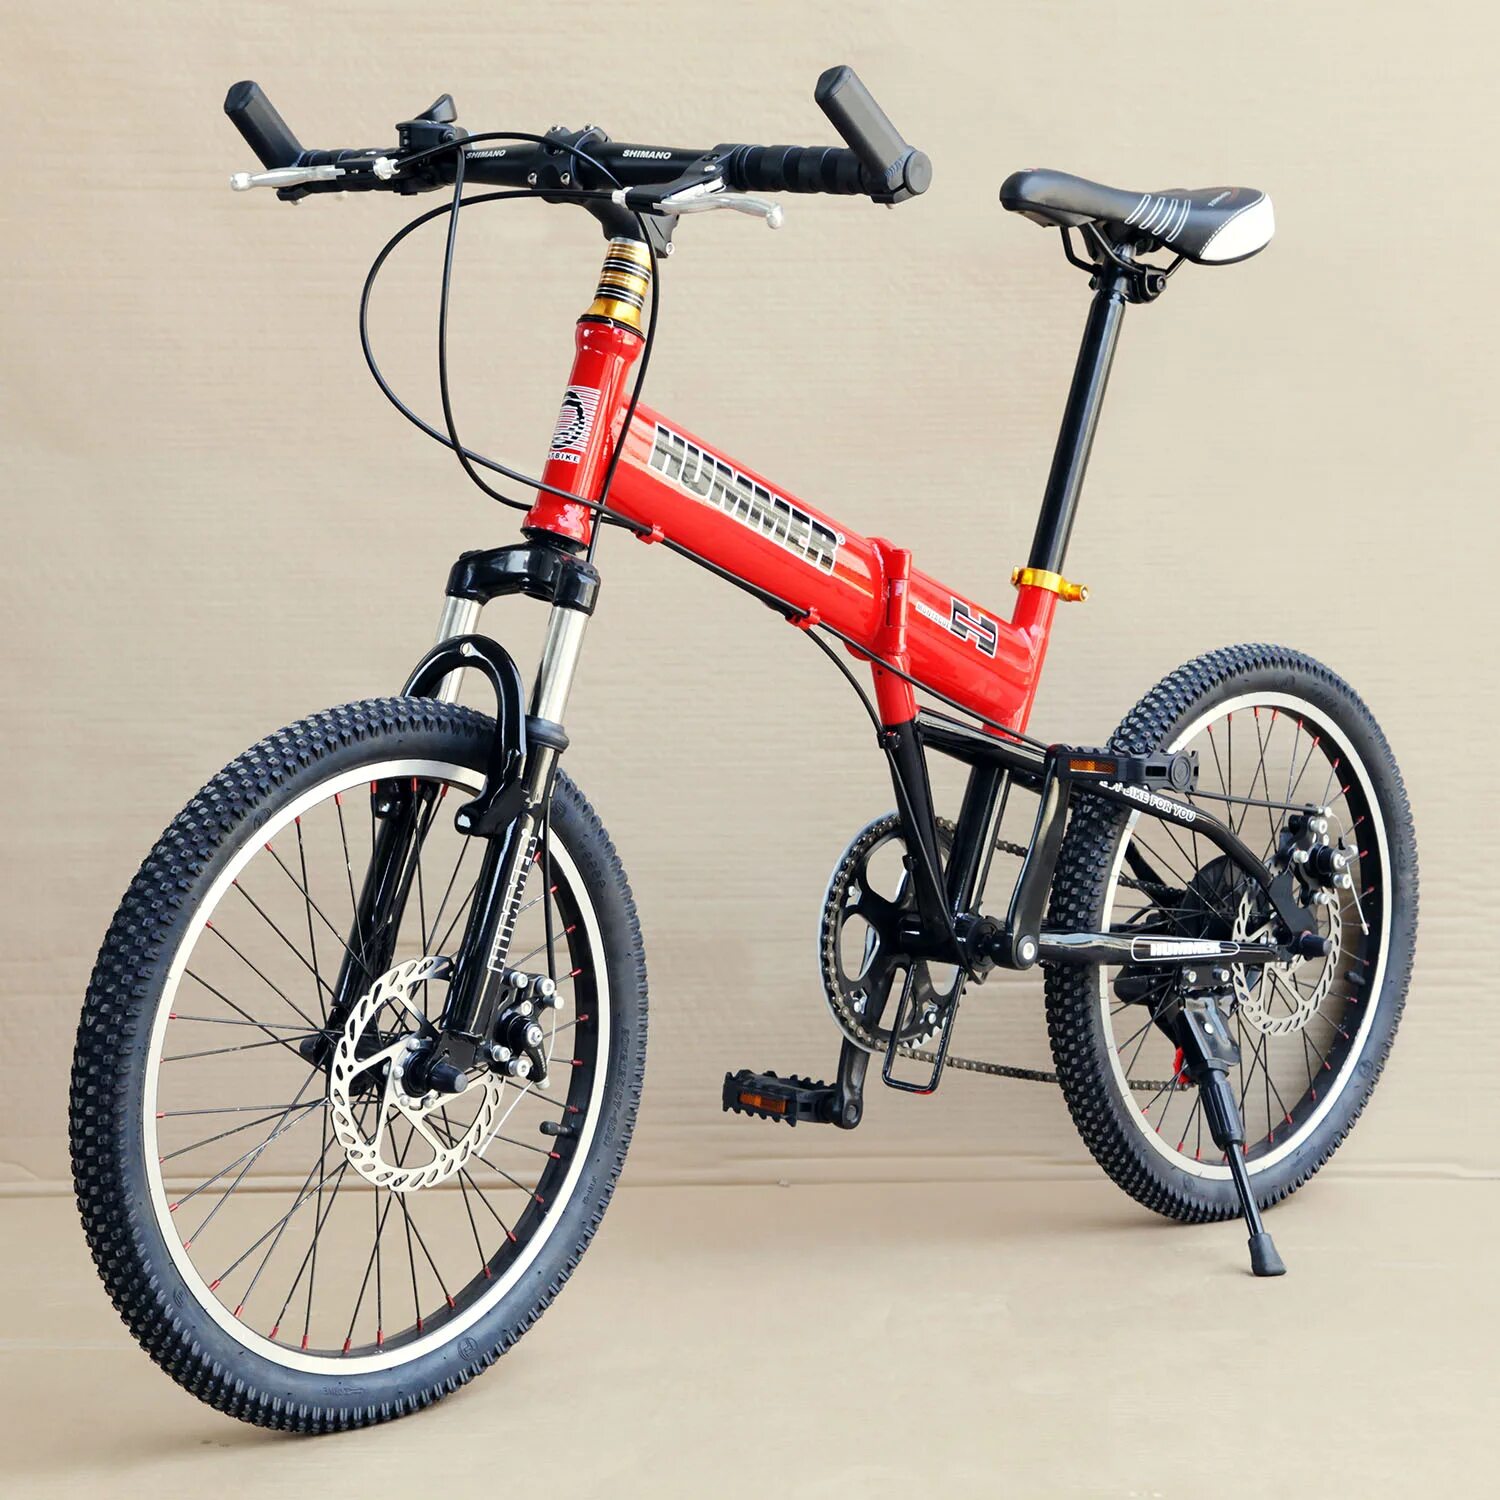 Велосипед 14 рама 26 колеса. Складной двухподвесный велосипед 20 дюймов. Велосипед складной Хаммер 20" колеса. Magma велосипед складной 20. Складной велосипед 20 дюйма стелс.